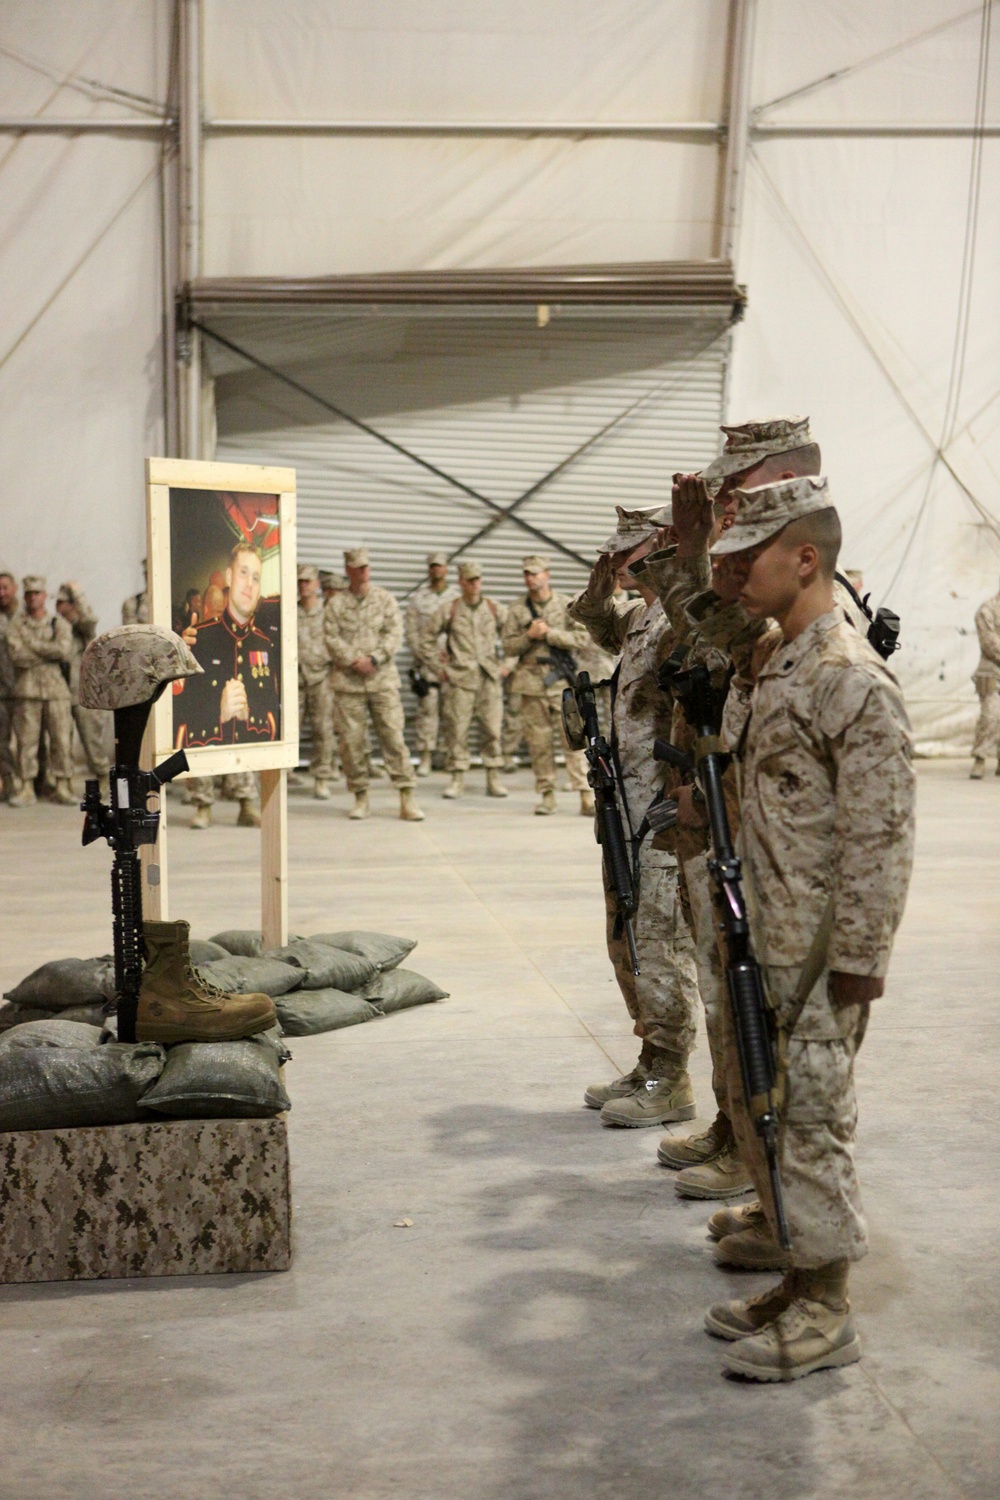 Sgt. Atwell Memorial